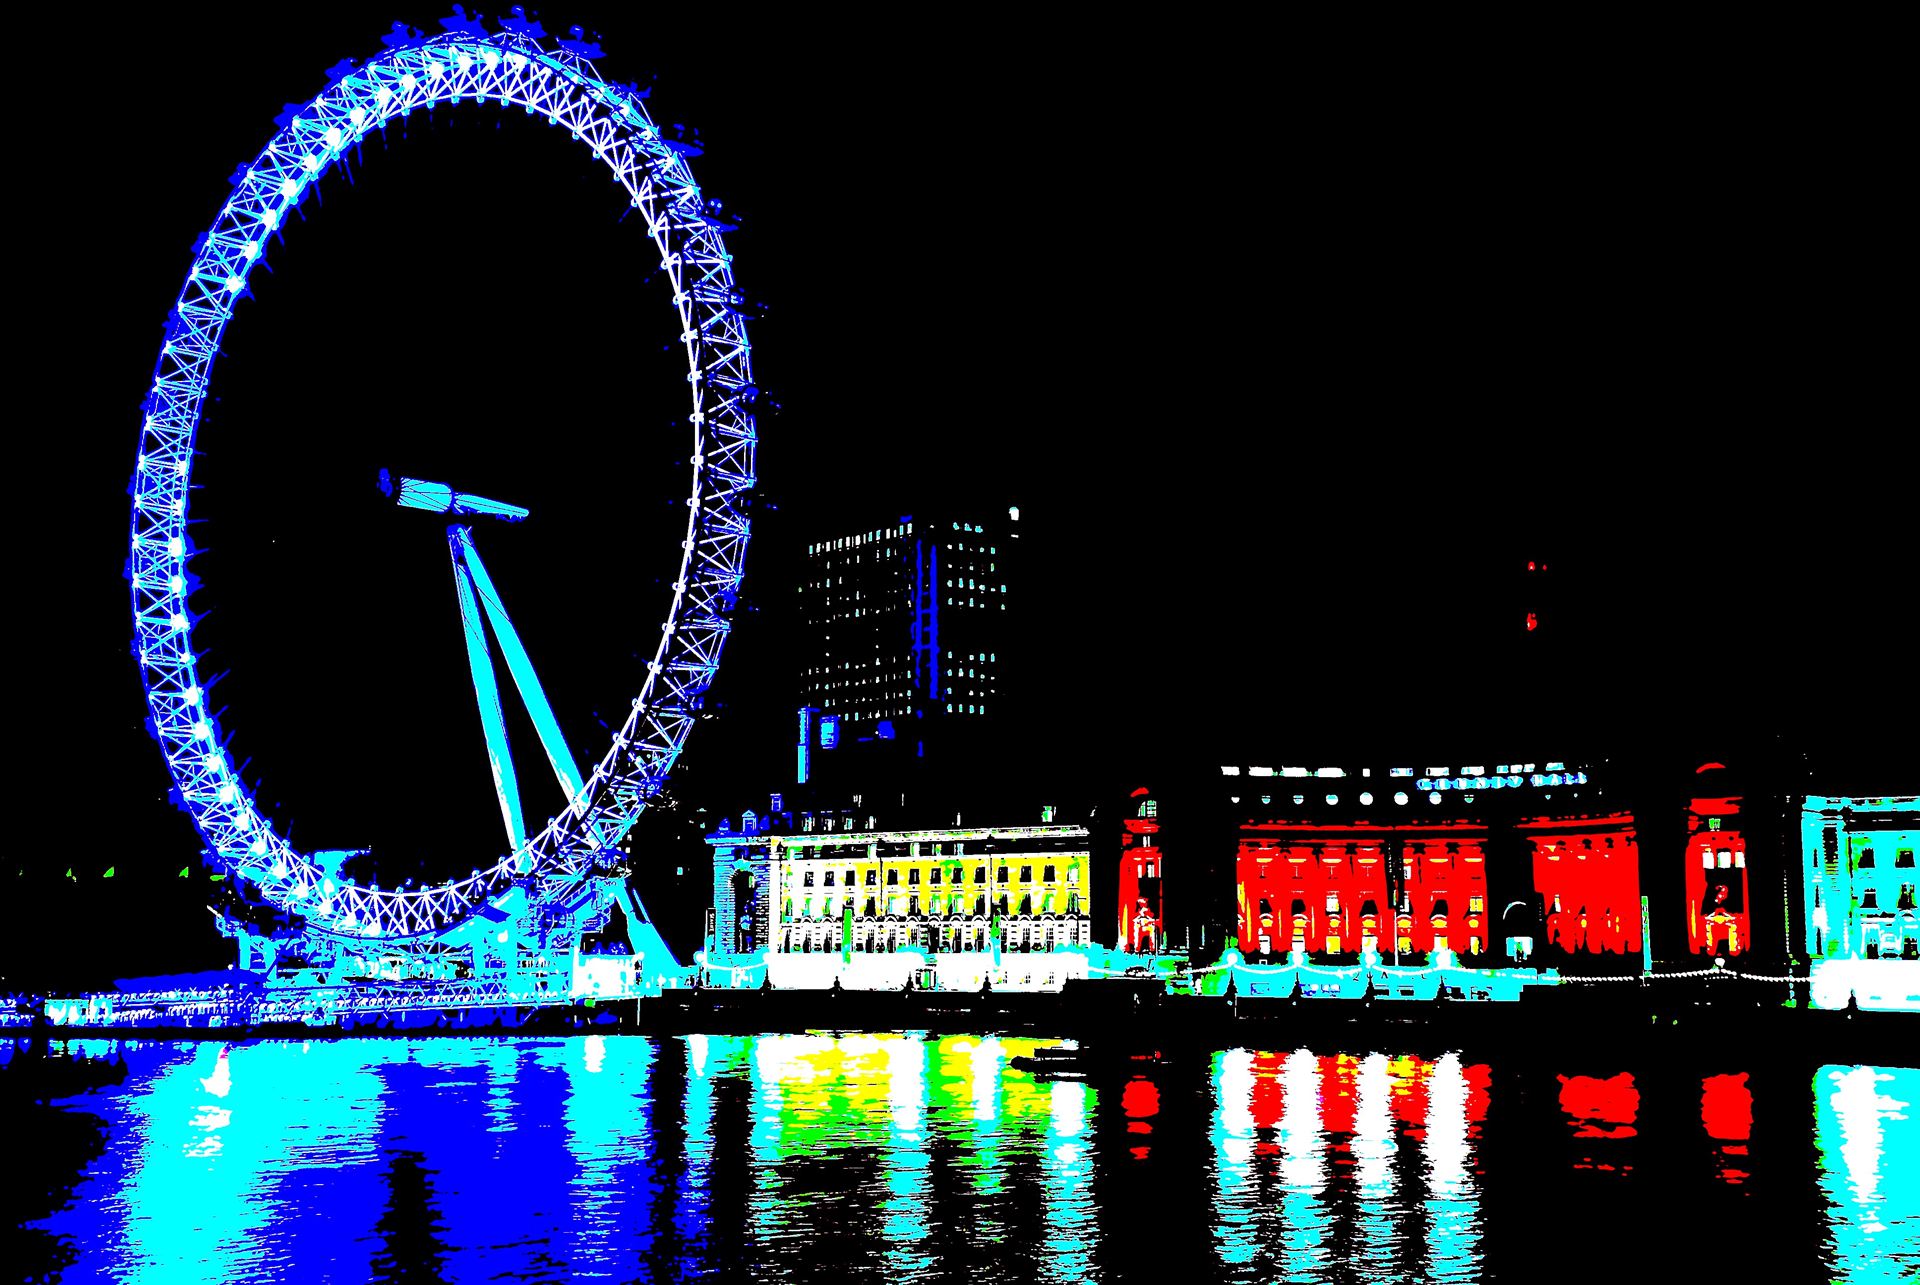 London Eye (2).jpg London Eye Night Landscape Pop Art Image, Romantic London Eye, by PopArtMediaProductions